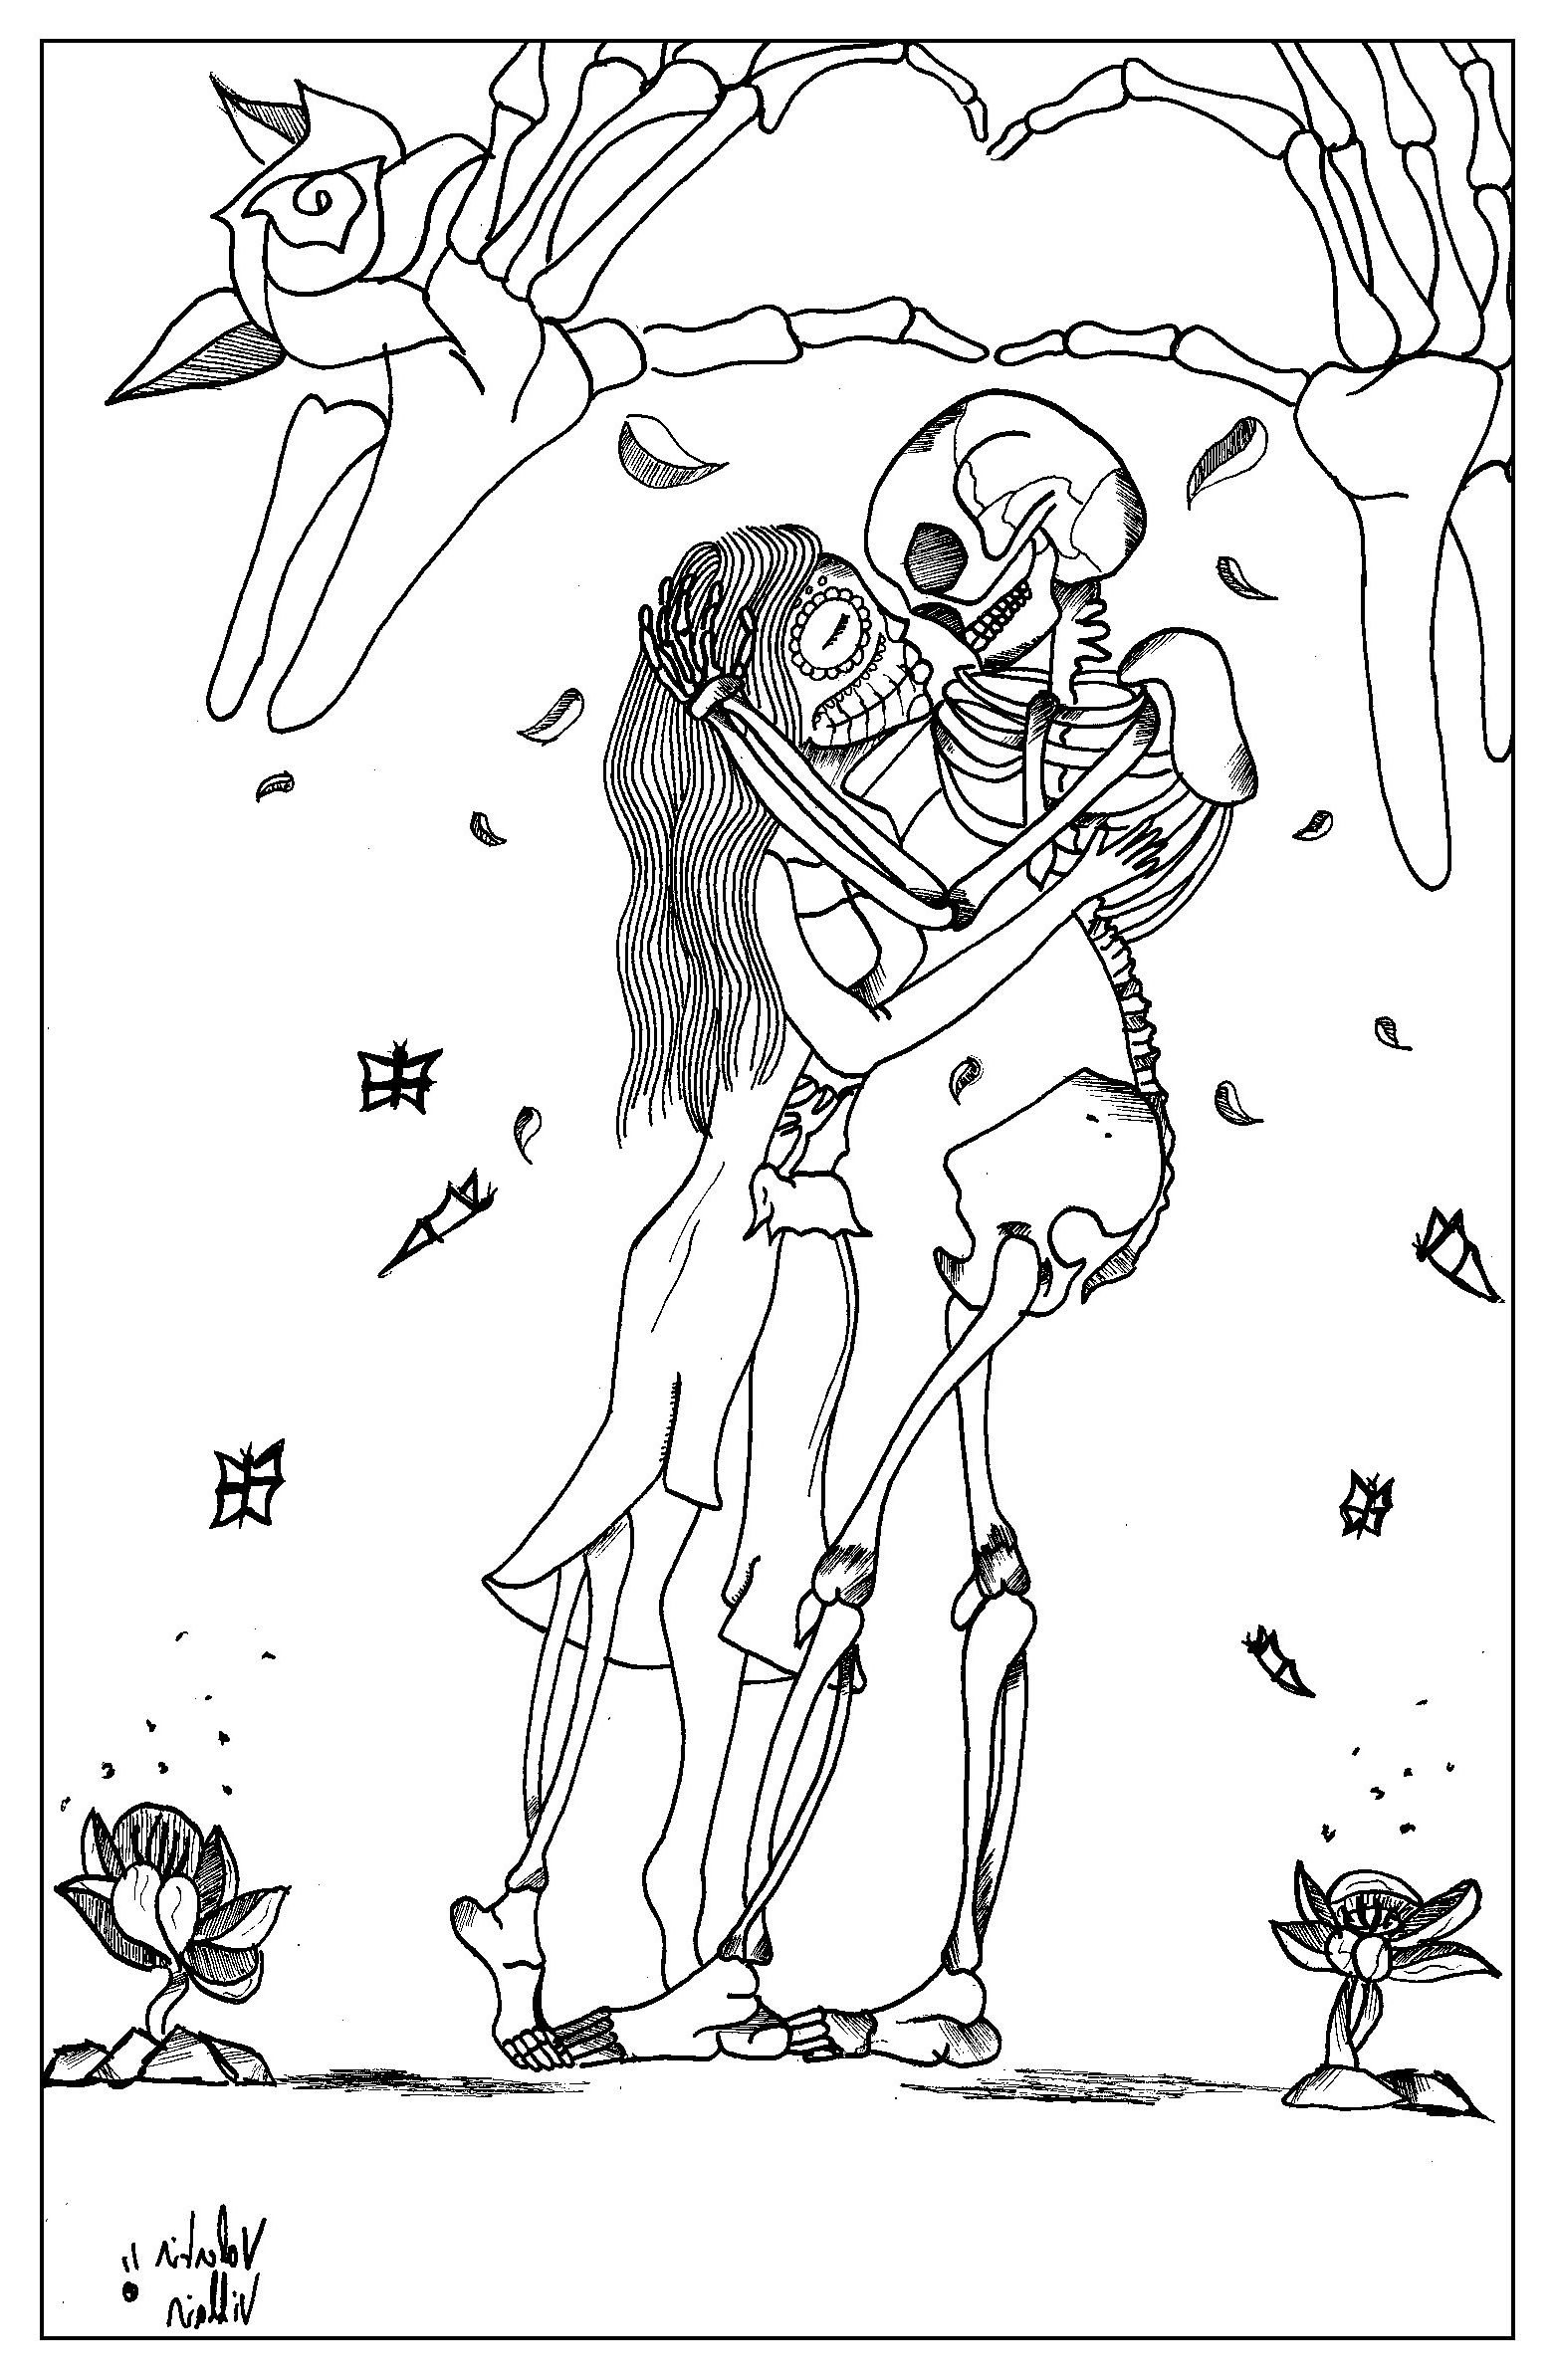 image=saint valentin coloriage adulte dessin coloriage st valentin par valentin 1 1